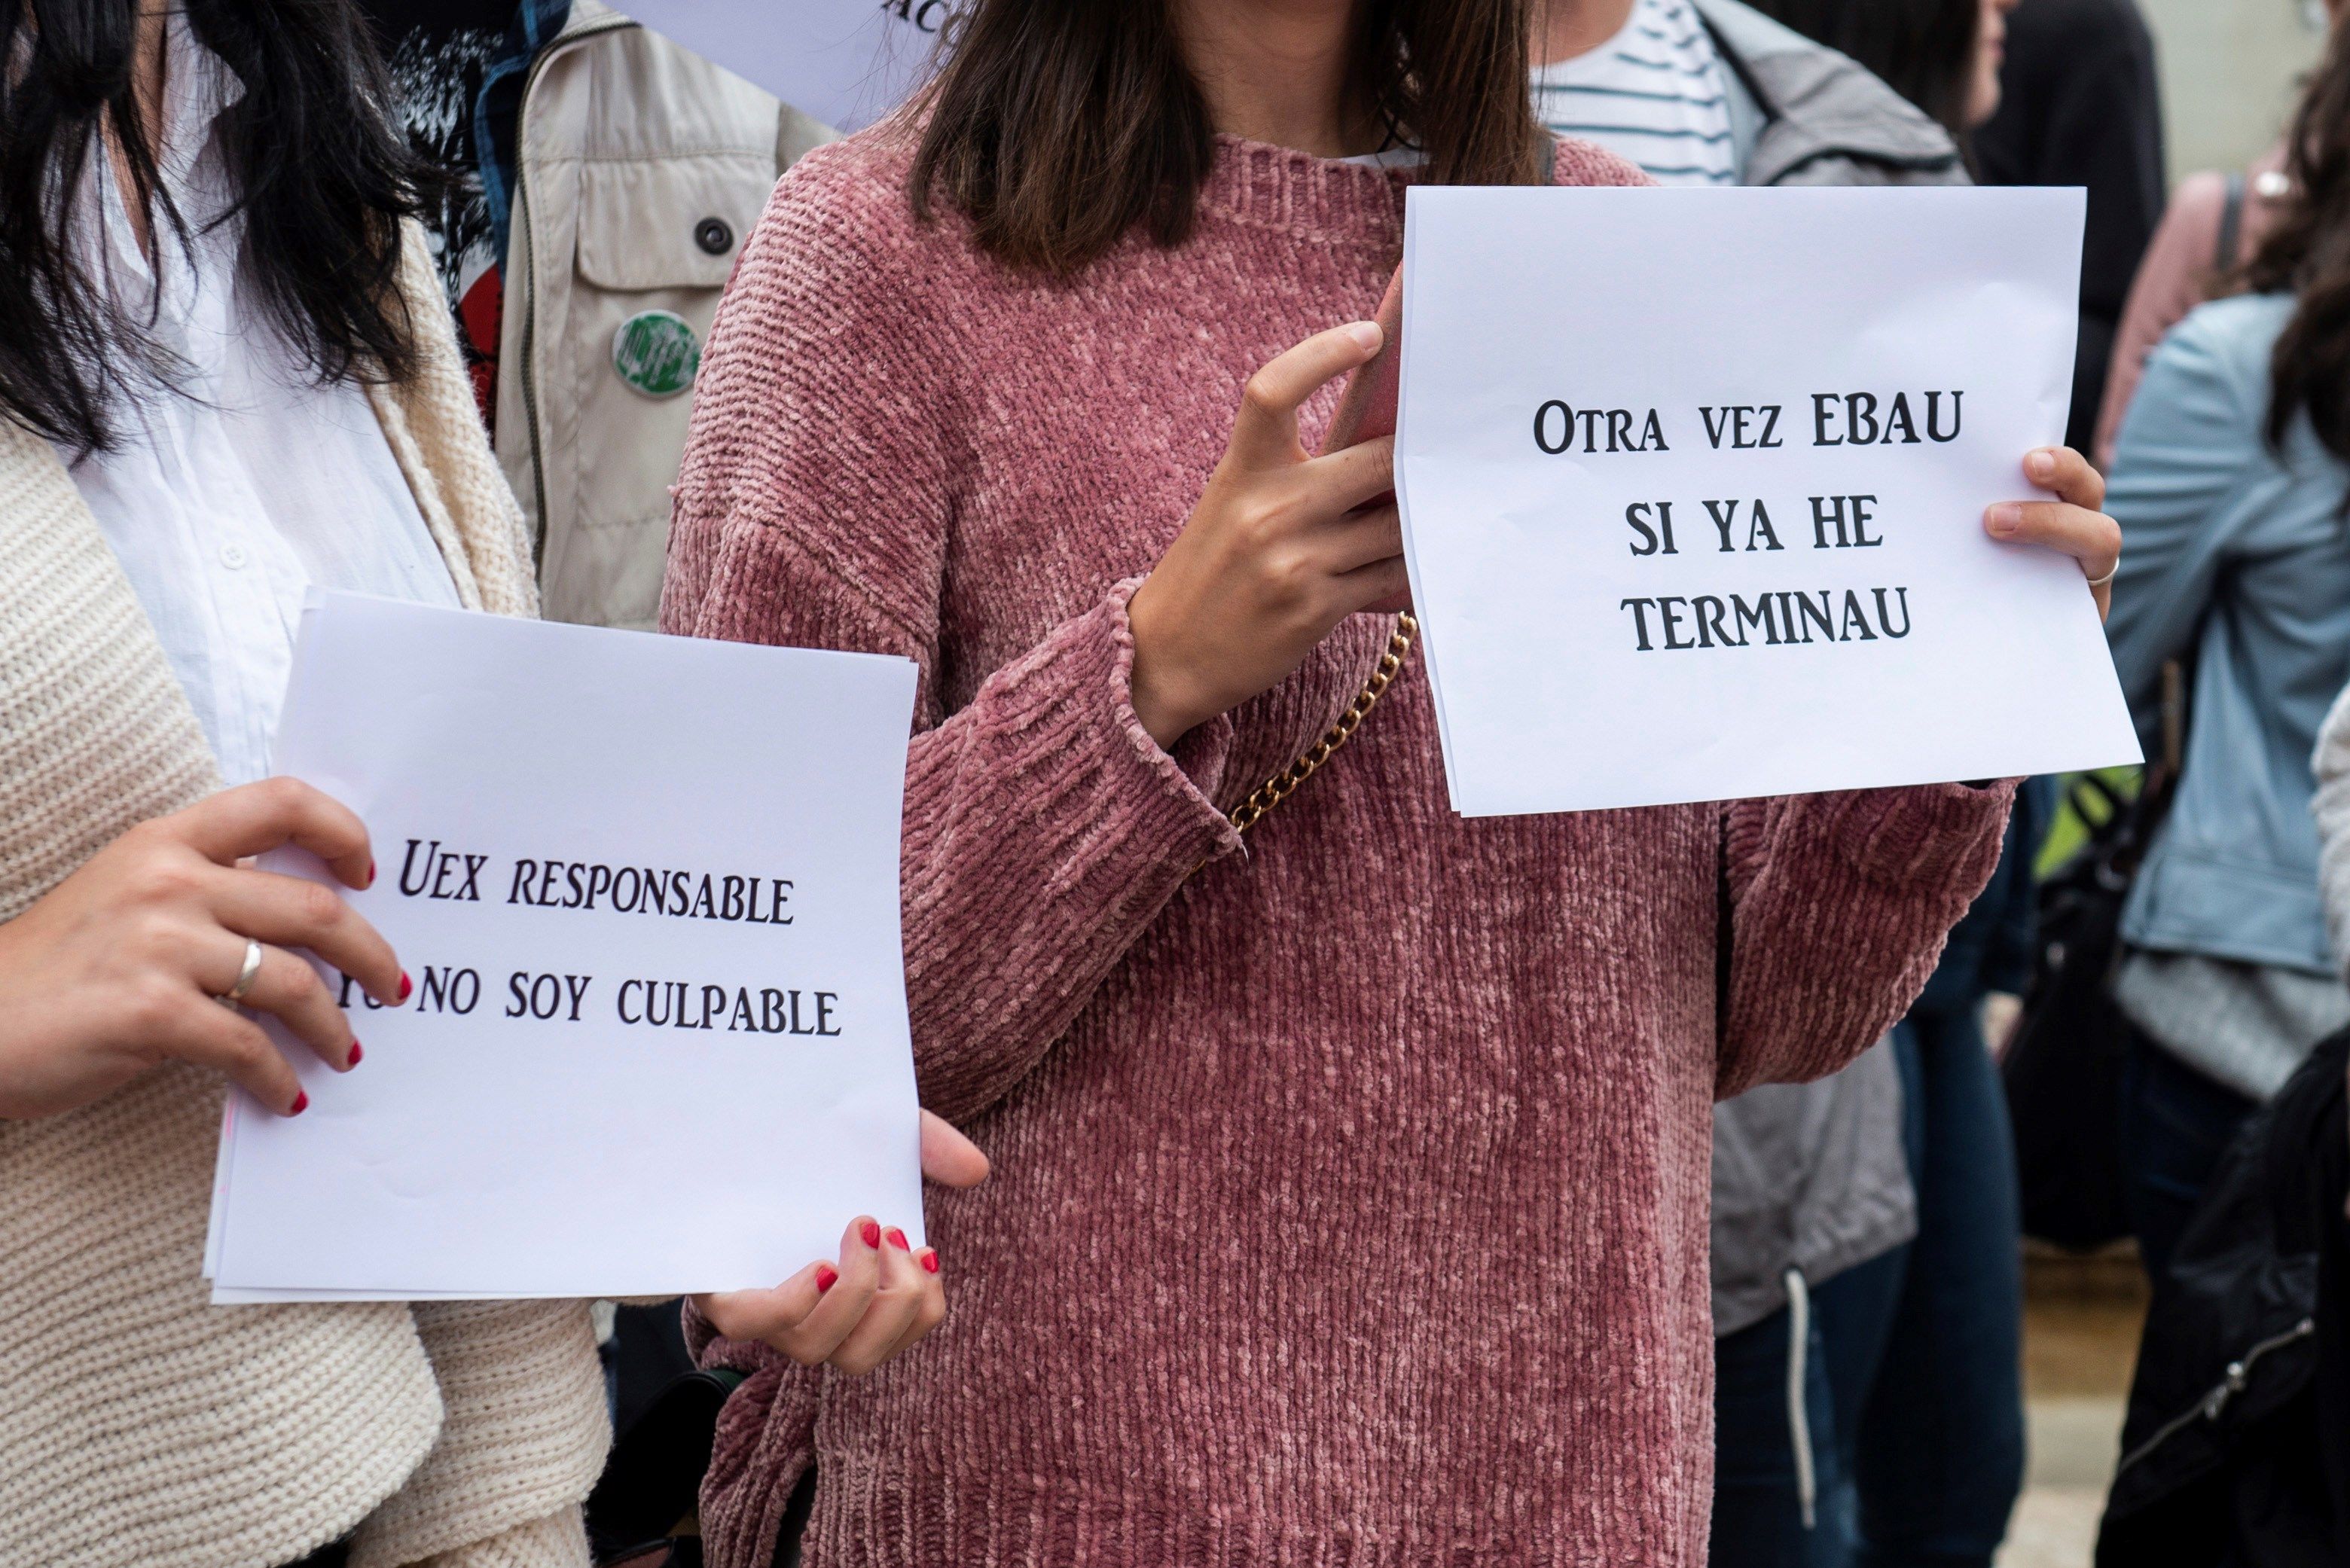 Estudiantes de Bachillerato se manifiestan frente a la Facultad de Filosofía y Letras del Campus de Cáceres.